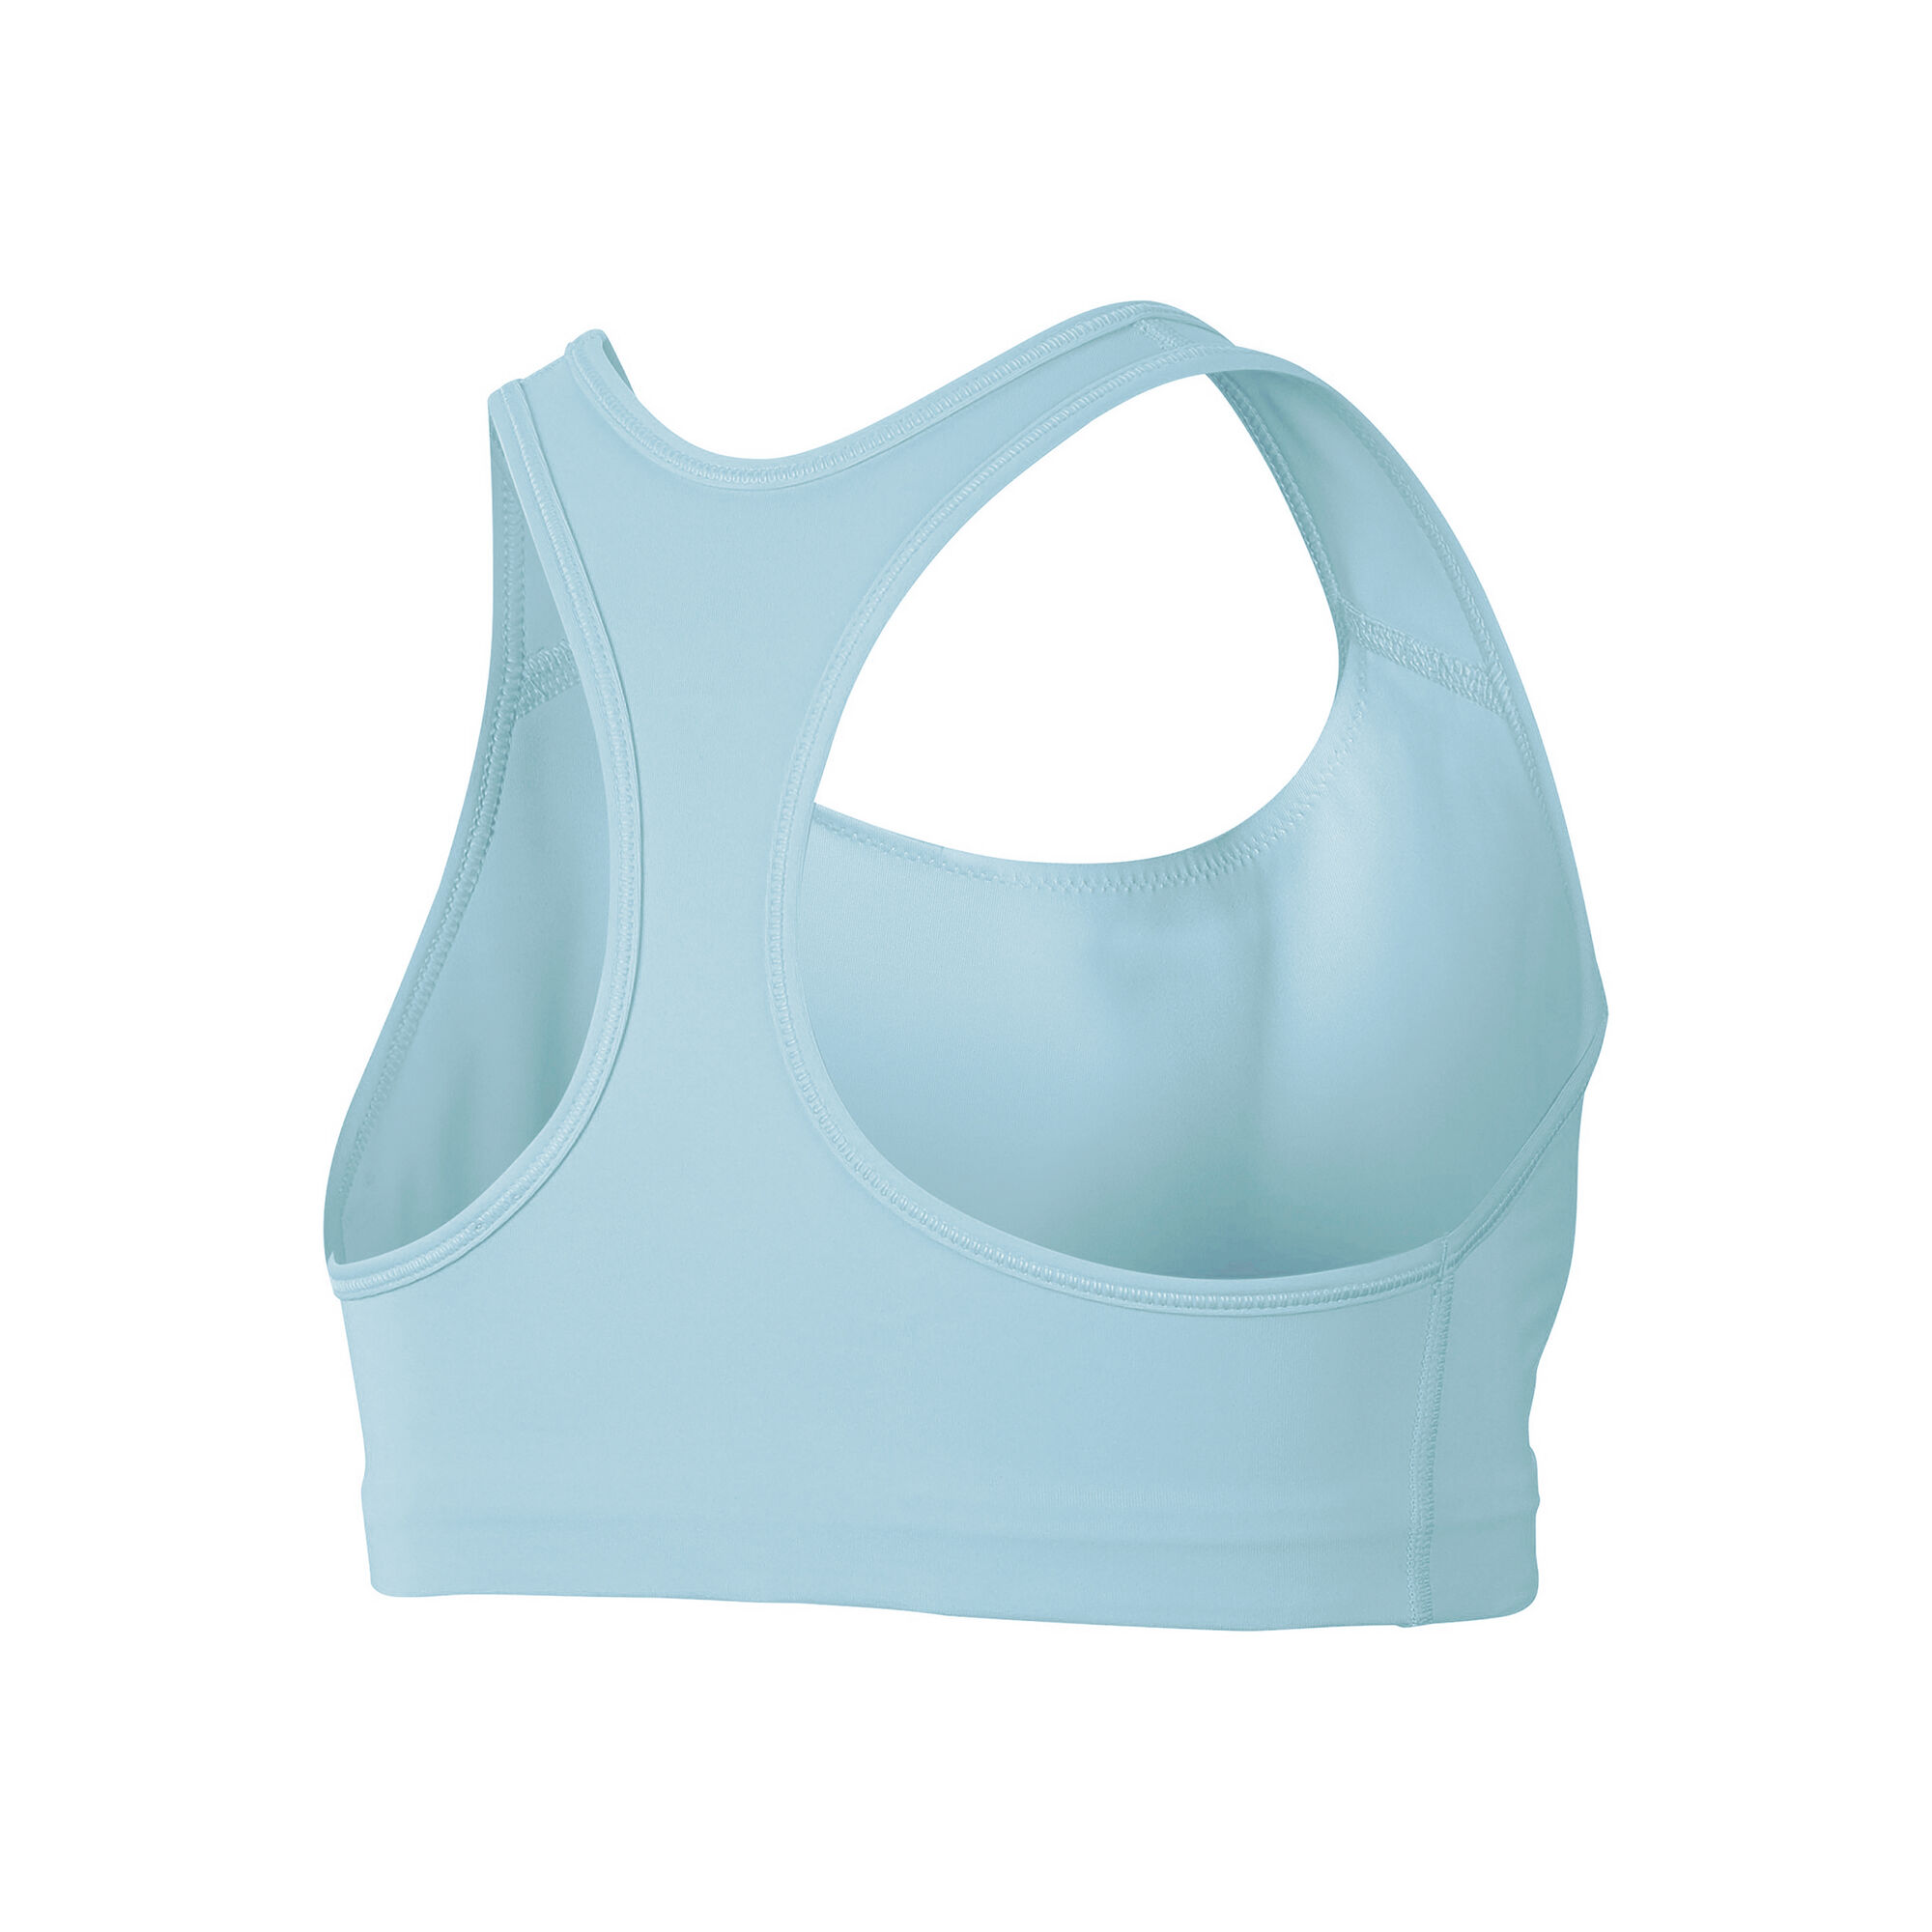 zuwimk Sports Bras For Women,Women's Classic T-Shirt Bra Light Blue,95